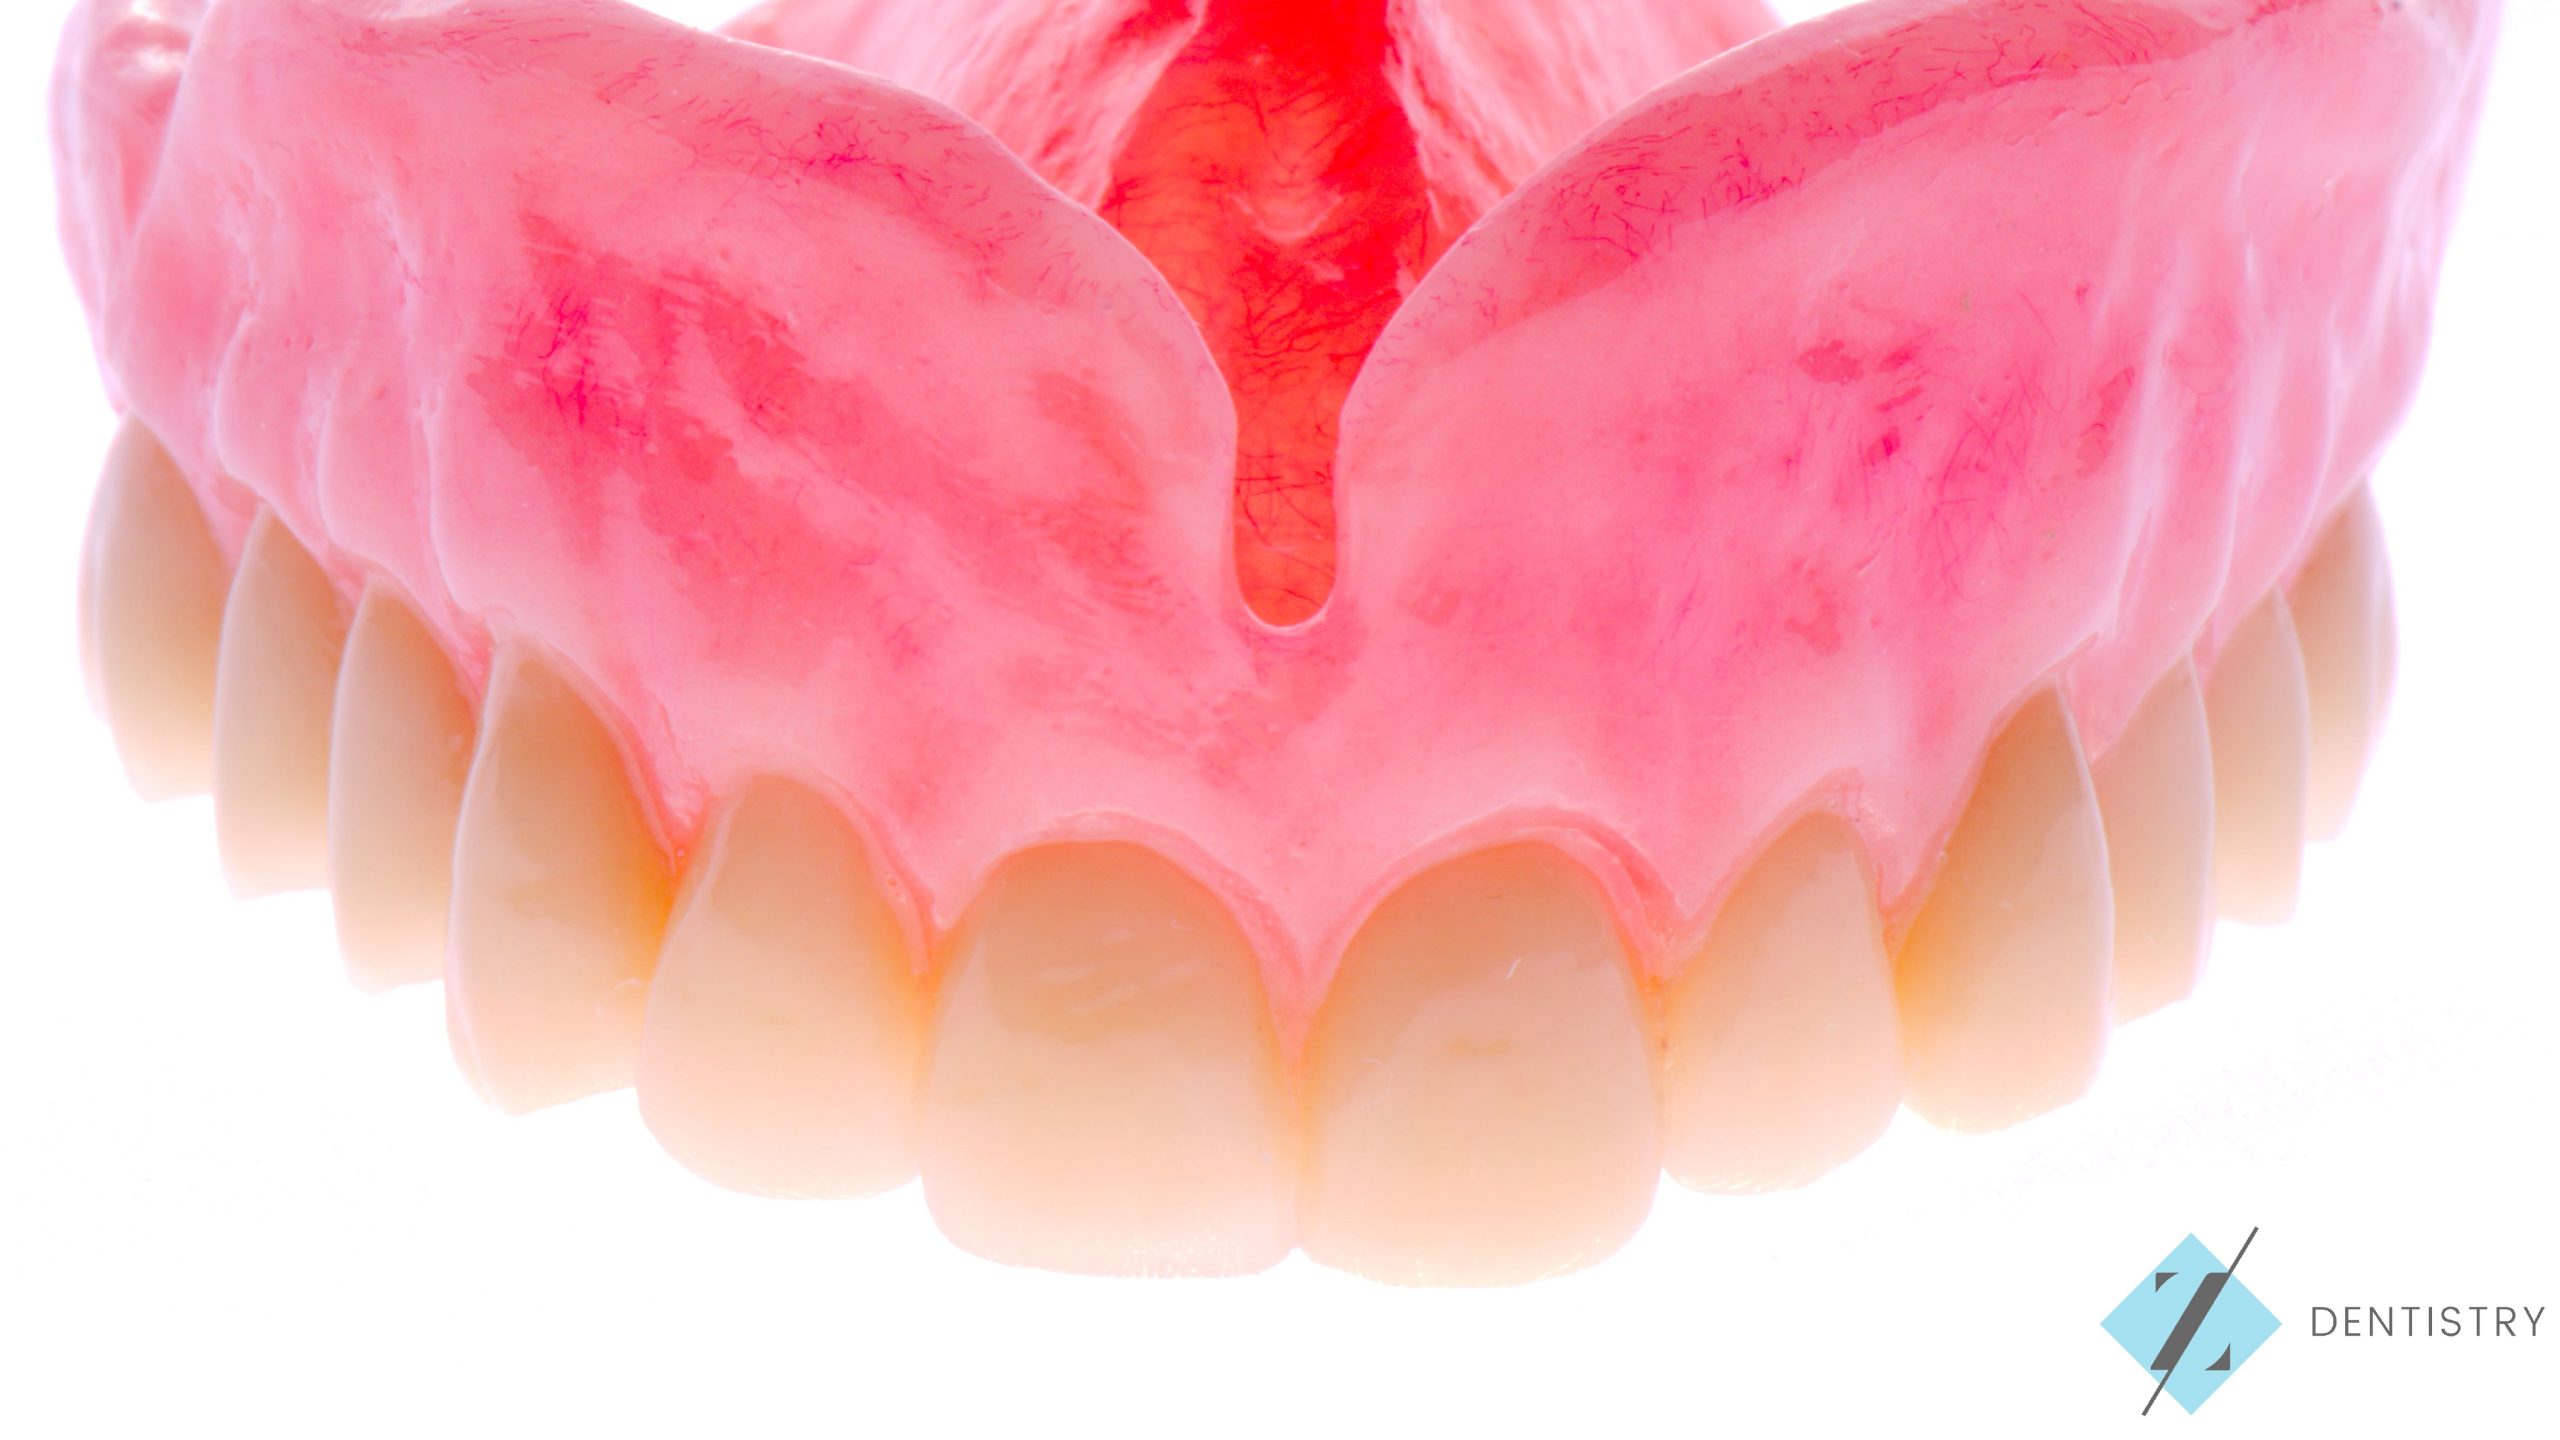 Full Upper removable Dentures, Z Dentistry, Roanoke, TX